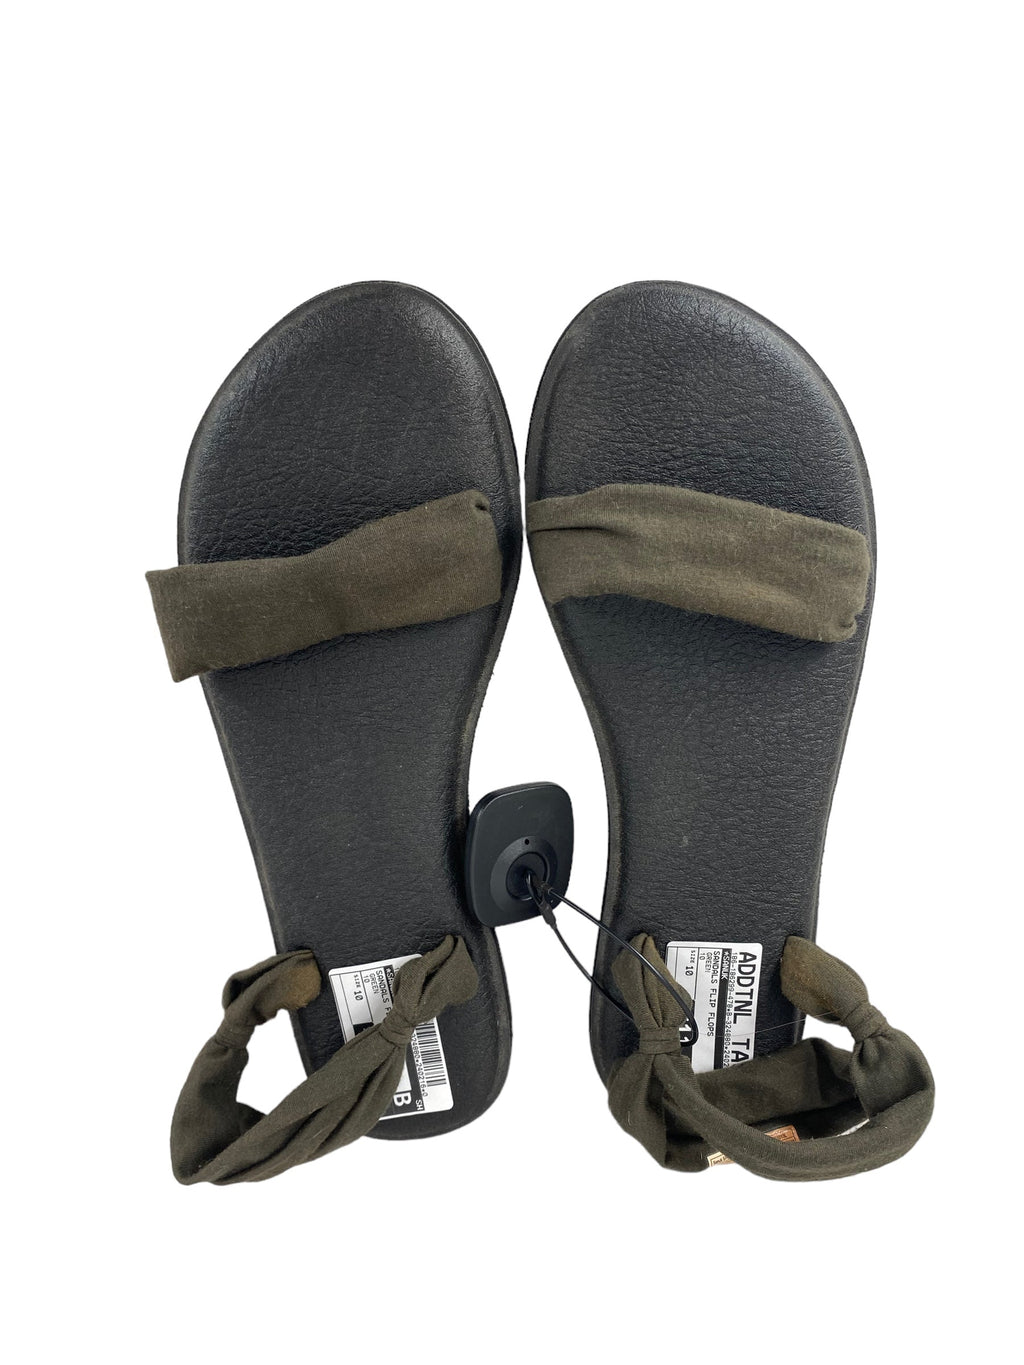 Sandals Flip Flops By Sanuk Size: 9